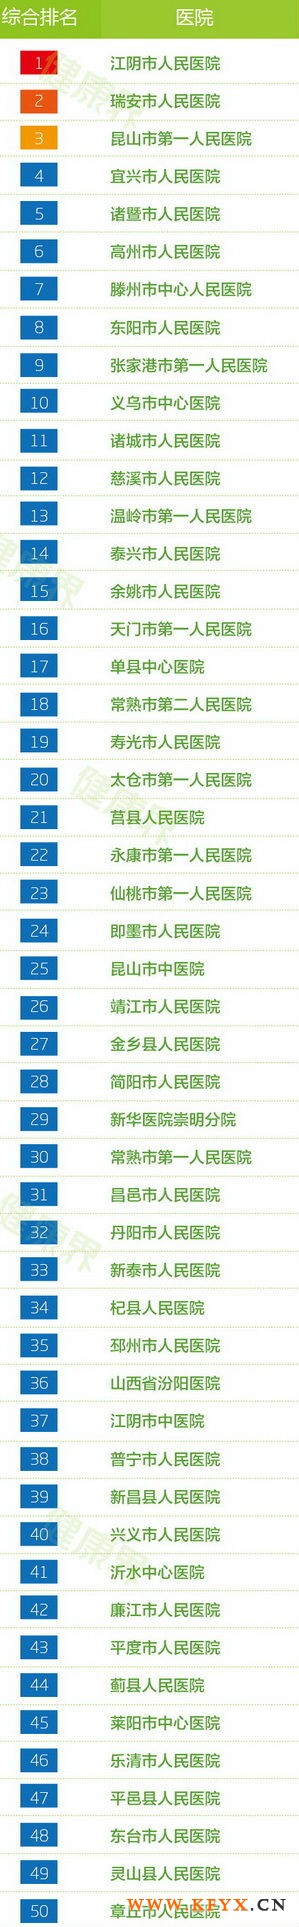 2013年中国县级医院竞争力100强排行